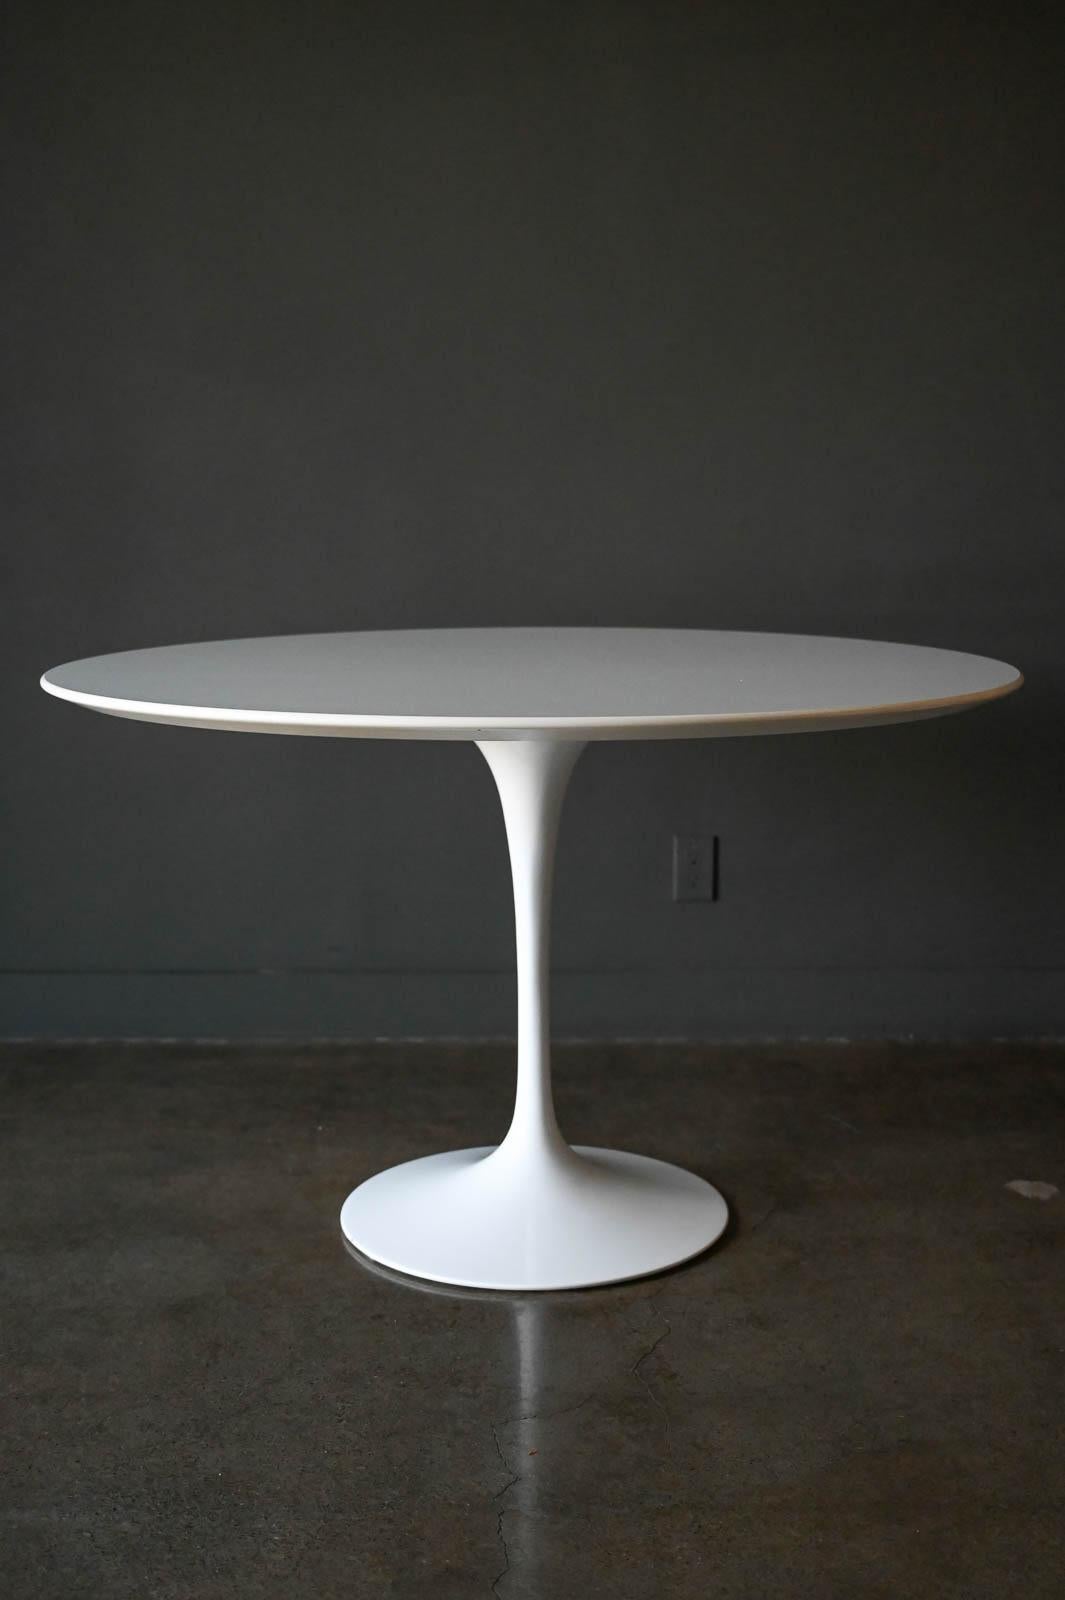 Eero Saarinen für Knoll Italy Tulip Dining Table, ca. 2015.  Runder Sockeltisch aus weißem Laminat mit weißem Fuß.  Sehr guter Originalzustand mit nur leichten Abnutzungserscheinungen an der Basis.  Das Oberteil ist nahezu perfekt.  Maße: 48